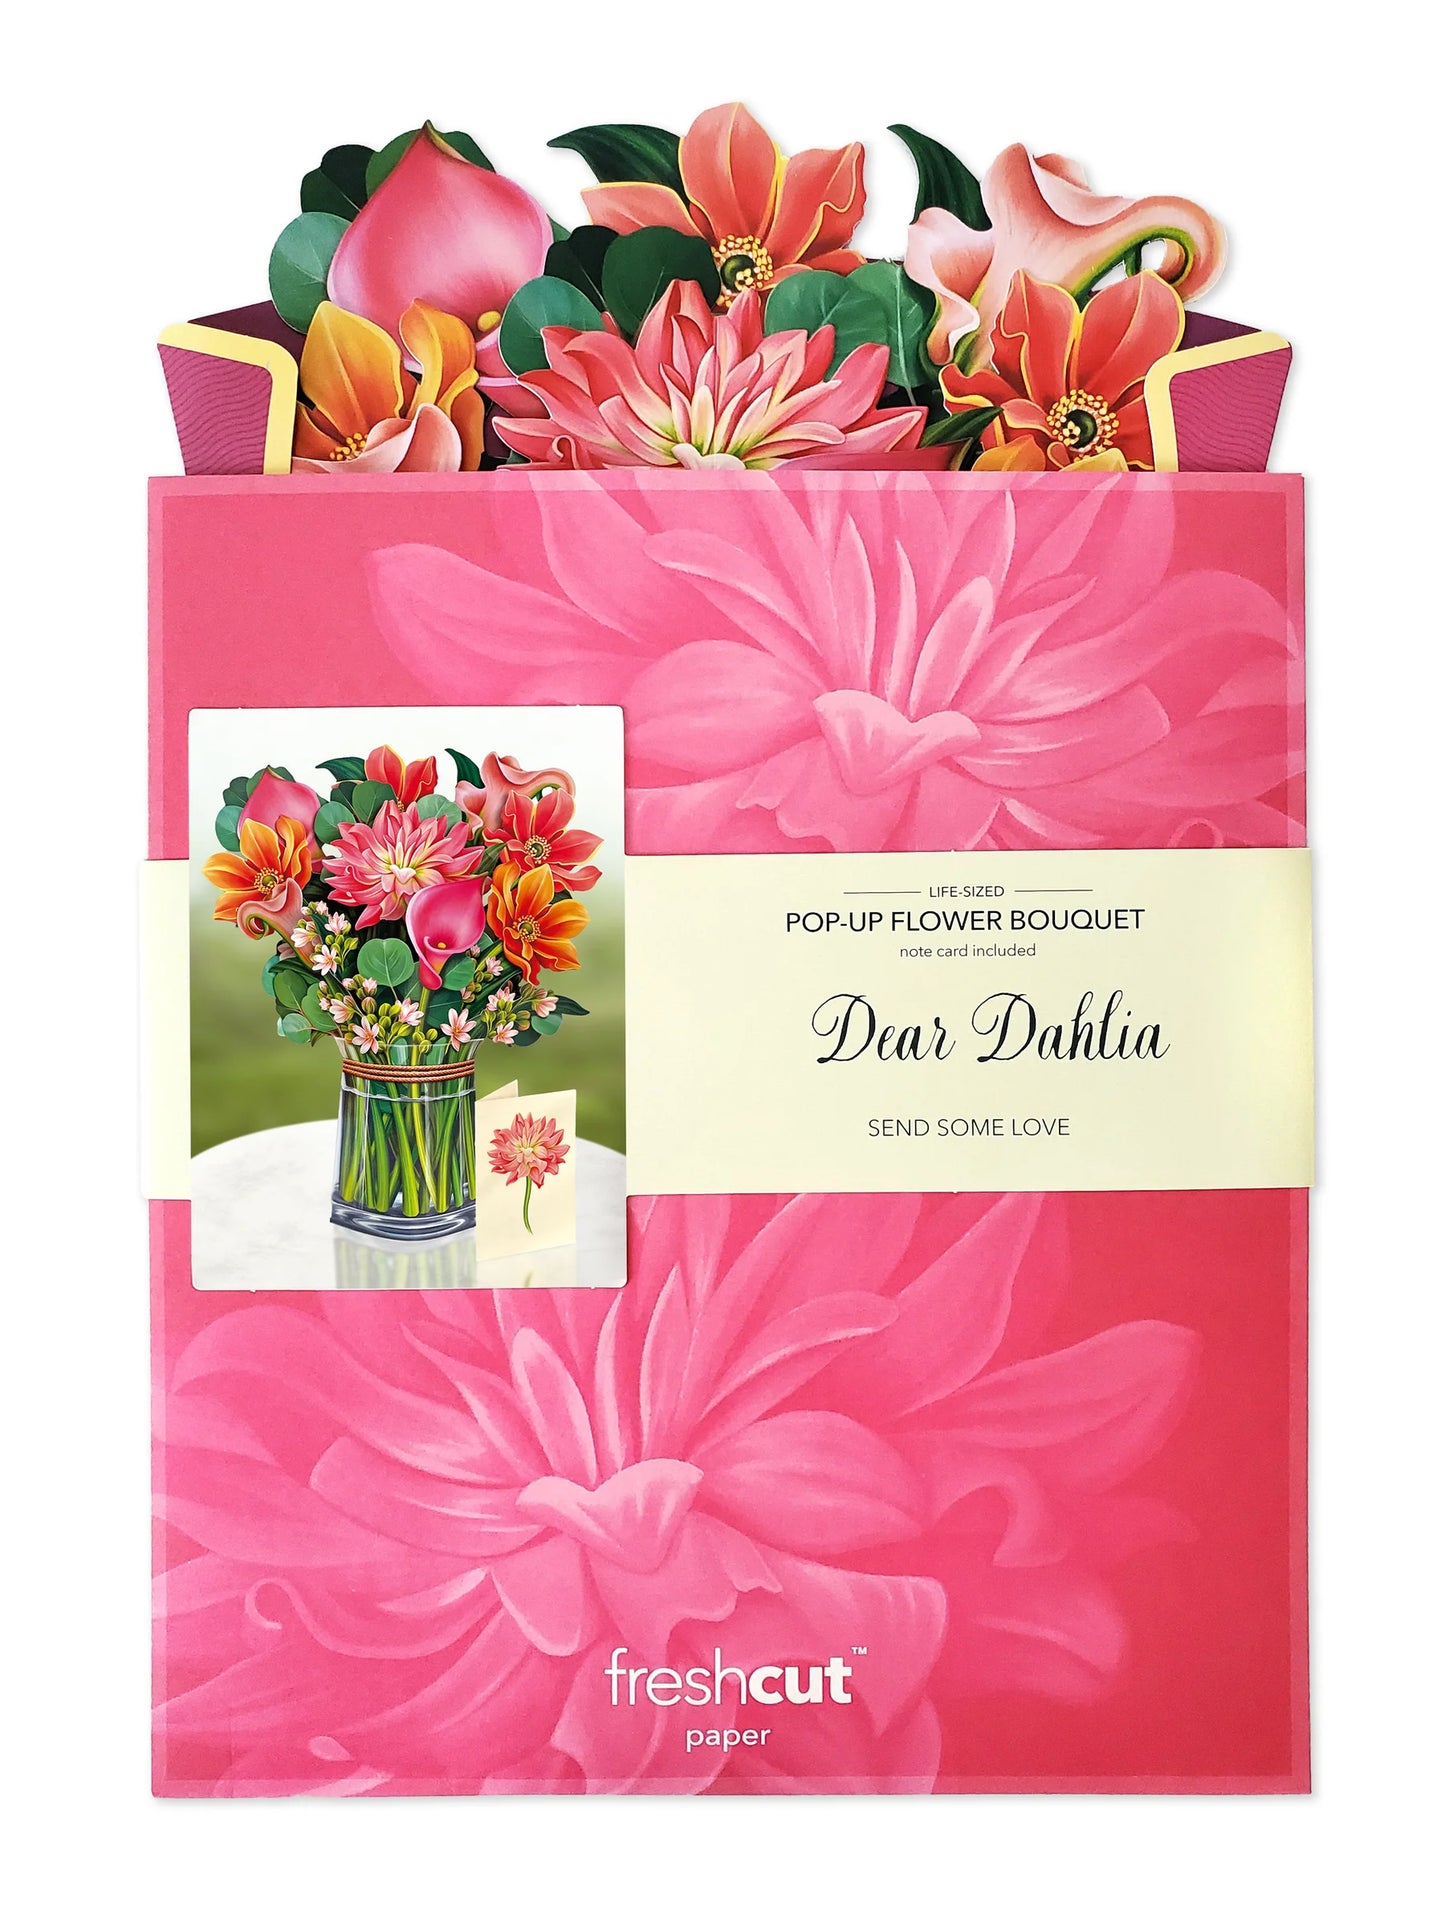 dear dahlia paper bouquet in its envelope.